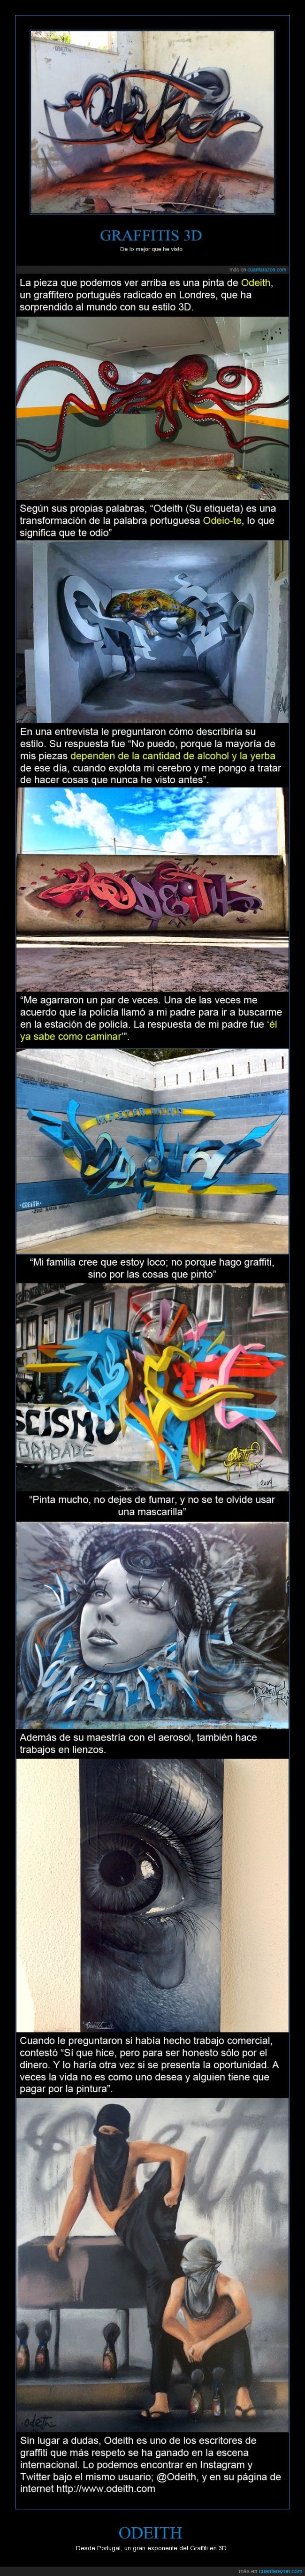 Graffiti,Writting,Odeith,Portugal,3D,estilo,arte